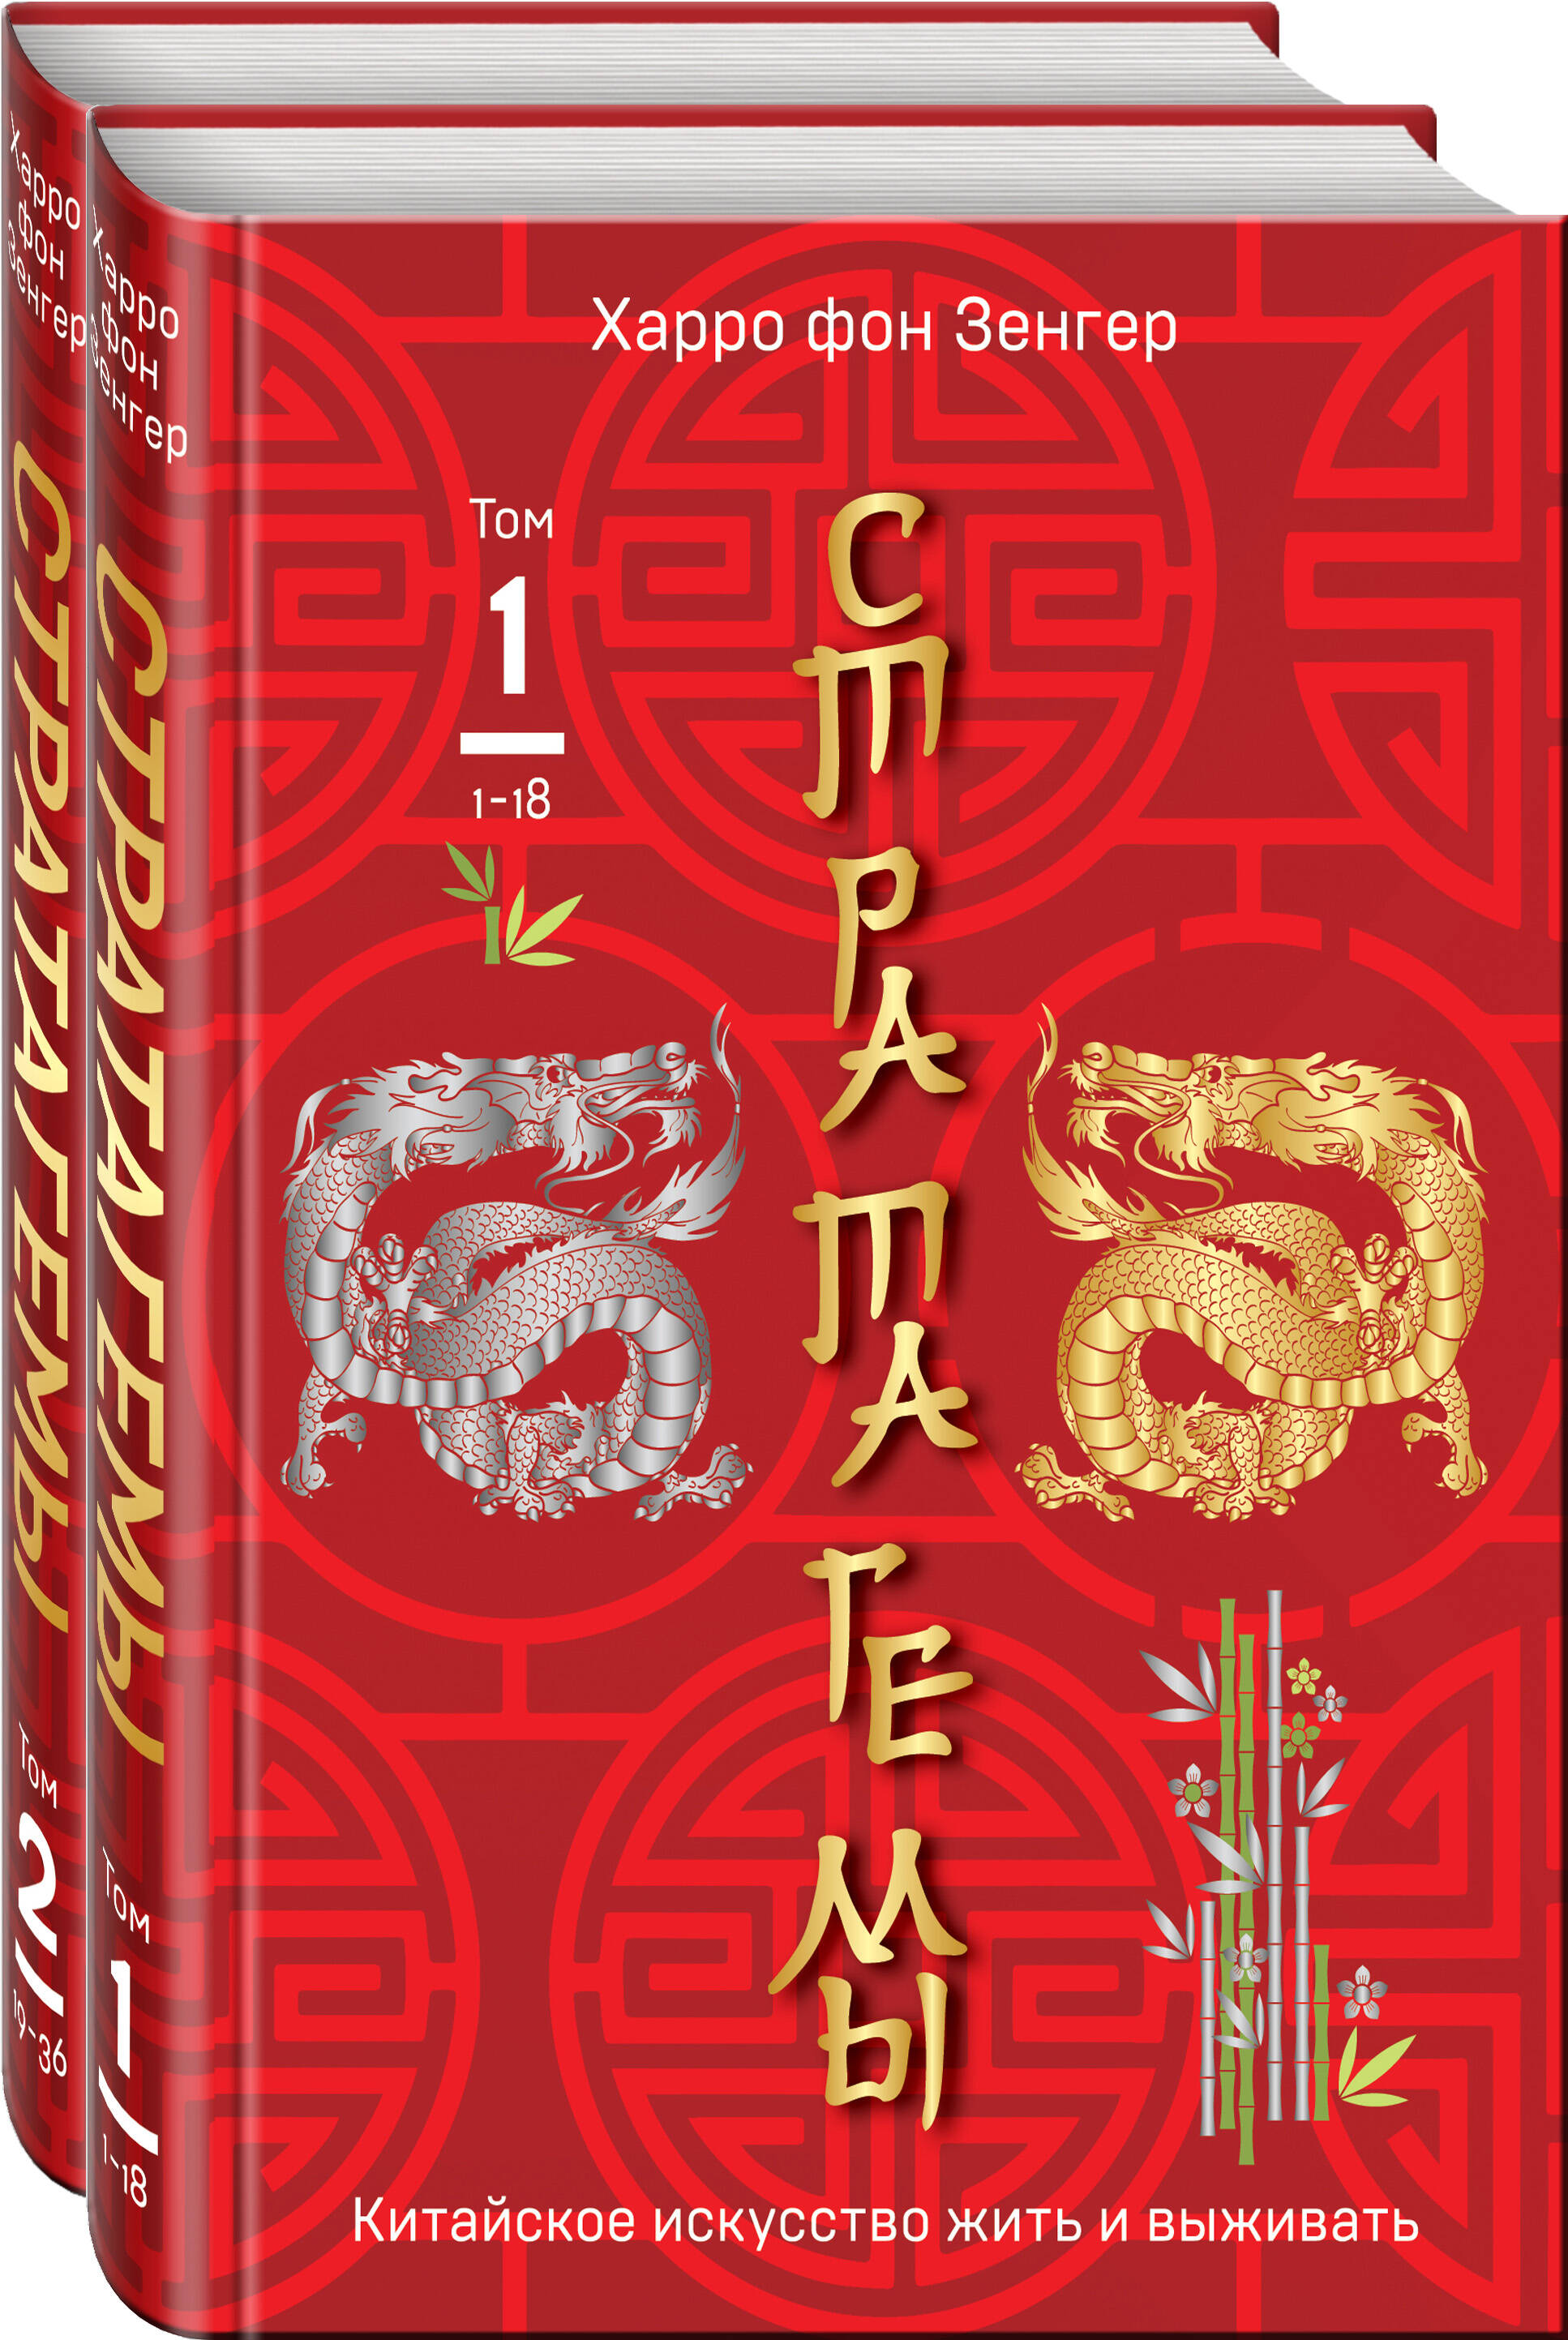 Зенгер Харро фон 36 китайских стратагем: Стратагемы. Китайское искусство жить и выживать. Том 1. Том 2 (комплект из 2 книг)